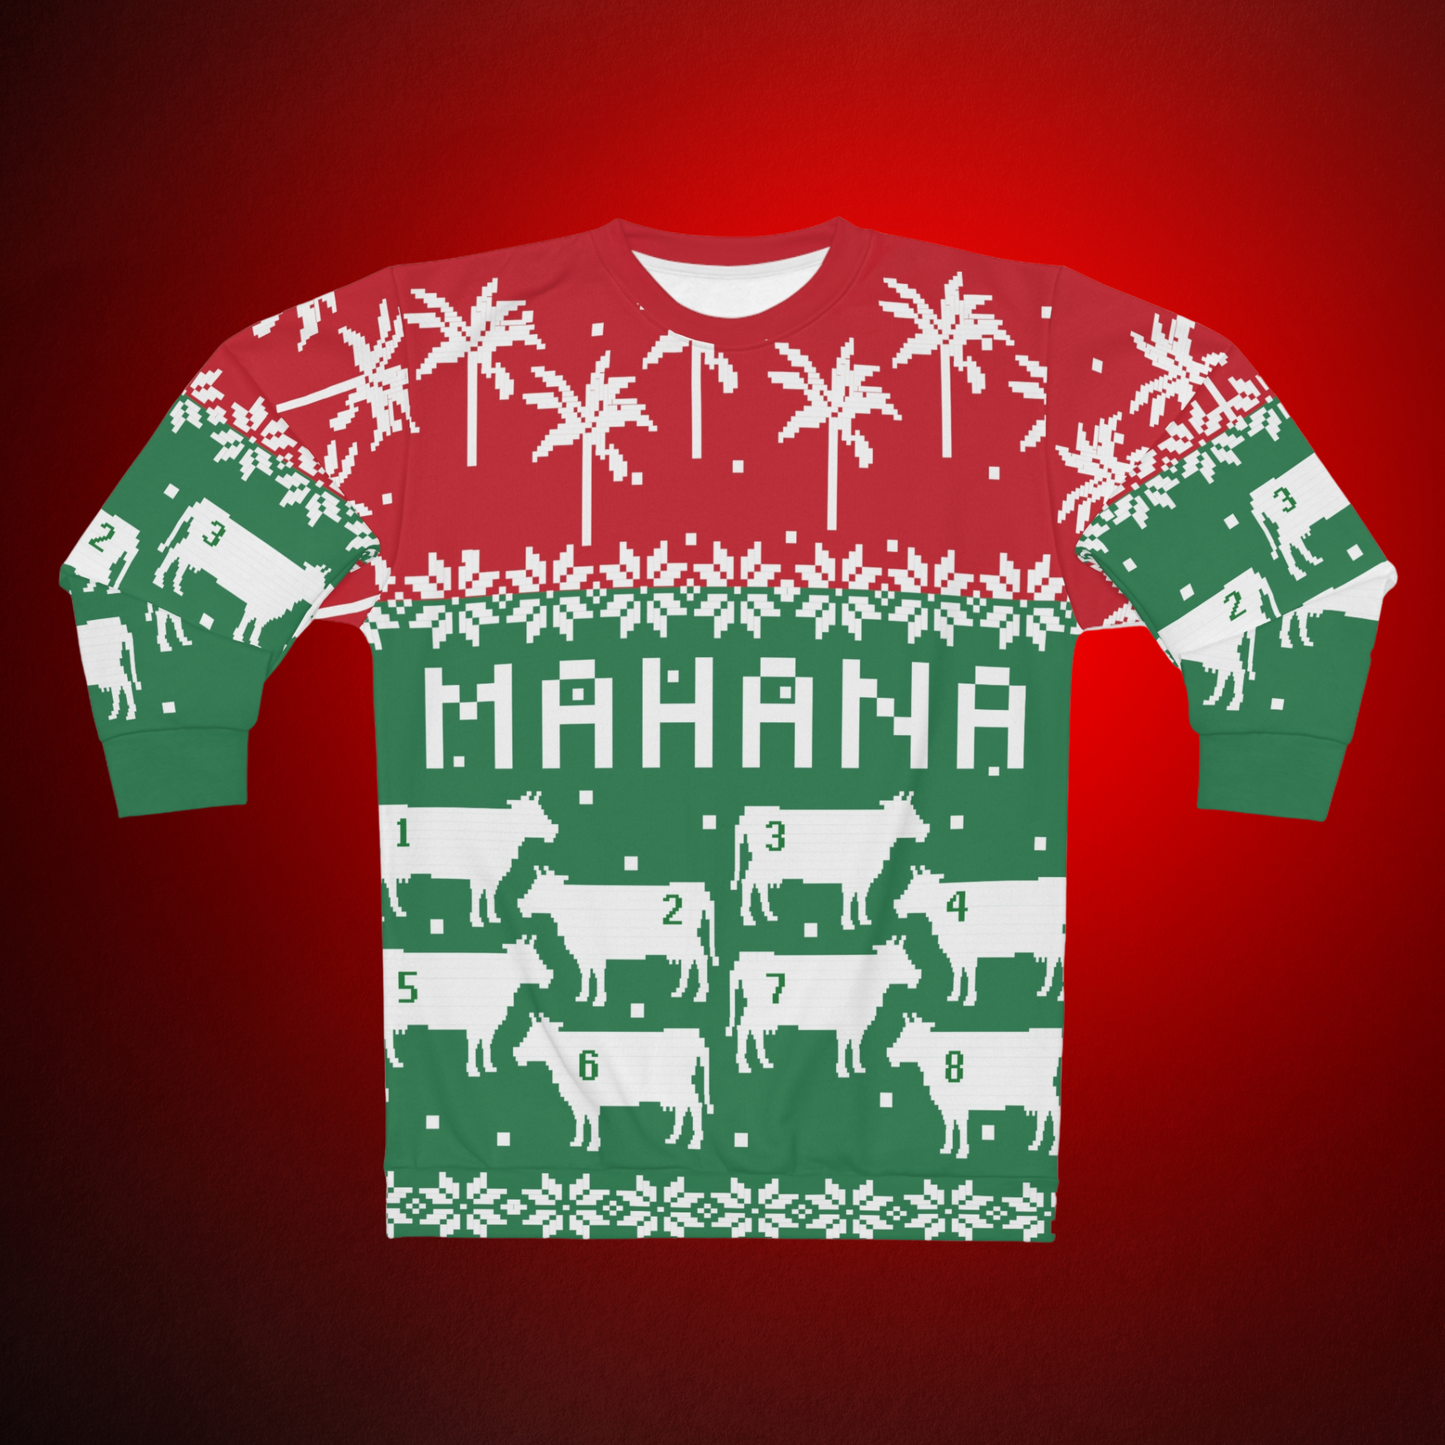 Mahana! You Ugly Sweater - Johnny Lingo's 8 Cow Ugly Christmas Sweatshirt